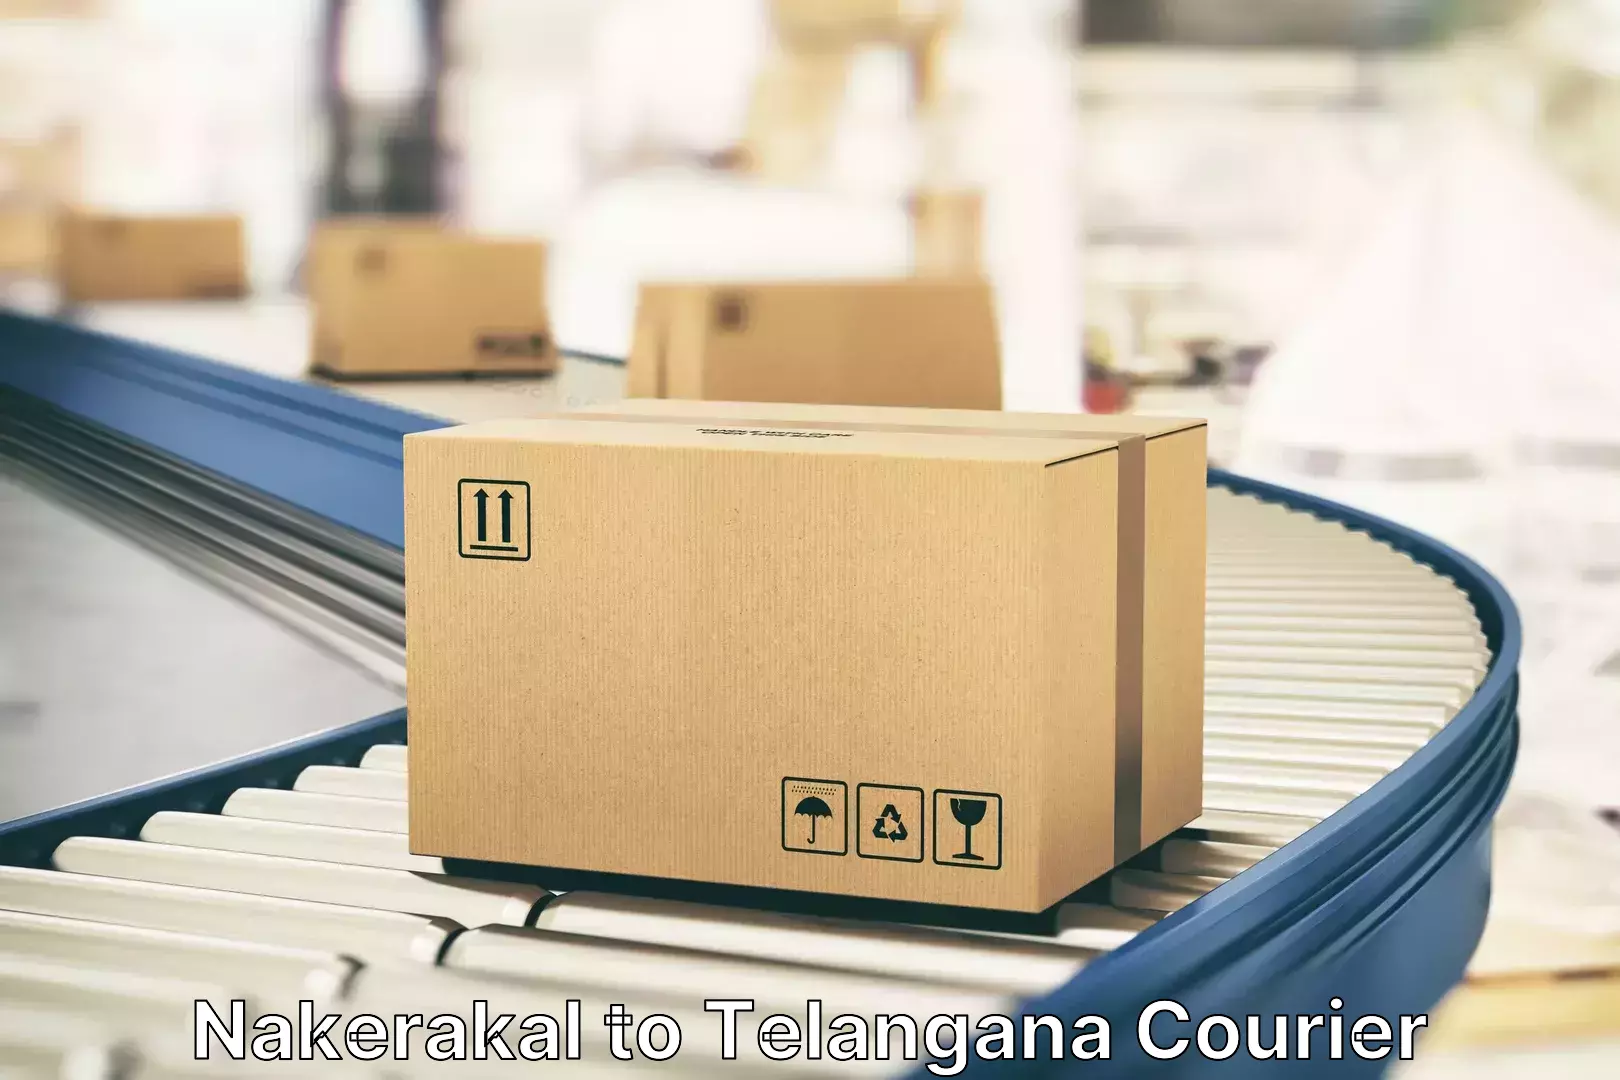 Online luggage shipping booking Nakerakal to Tiryani